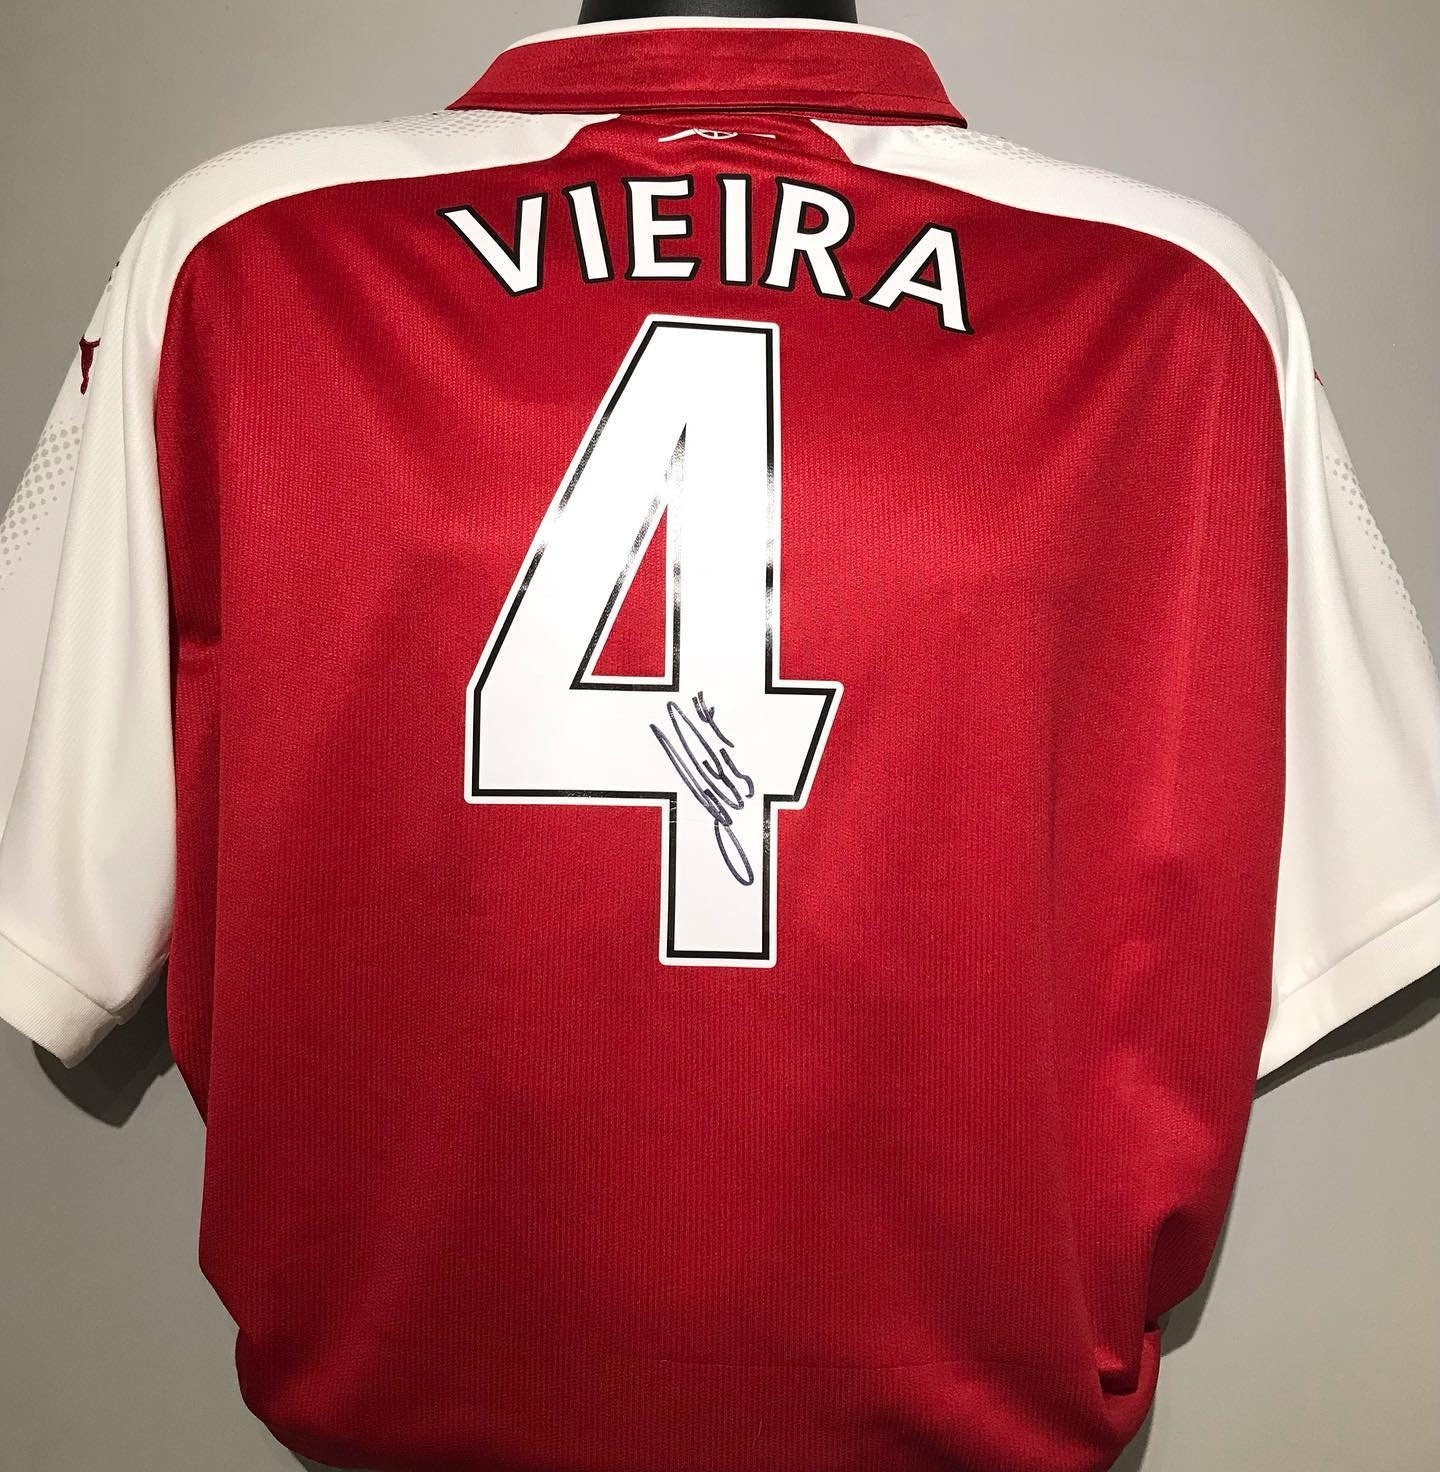 Patrick Vieira - Arsenal FC - hand-signed replica shirt - AFC memorabilia, football shirt (UNFRAMED)